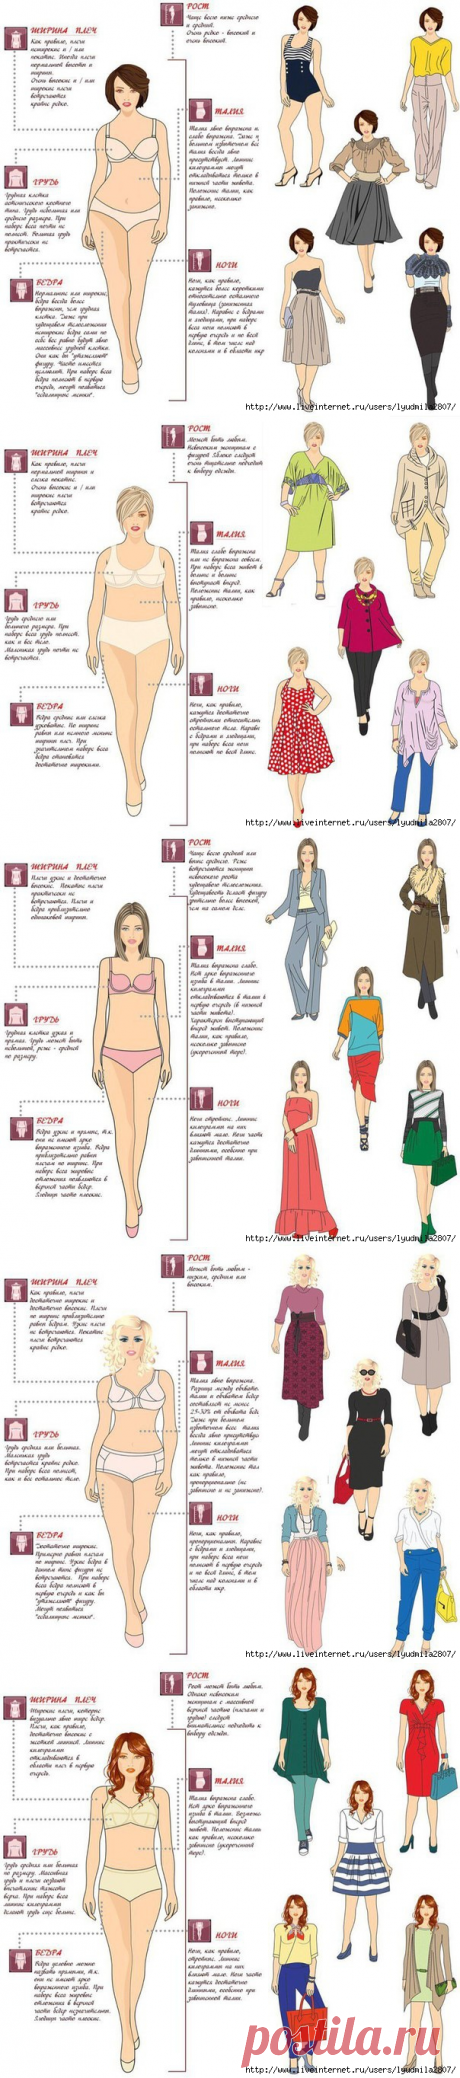 Как одеваться женщинам с разными типами фигур